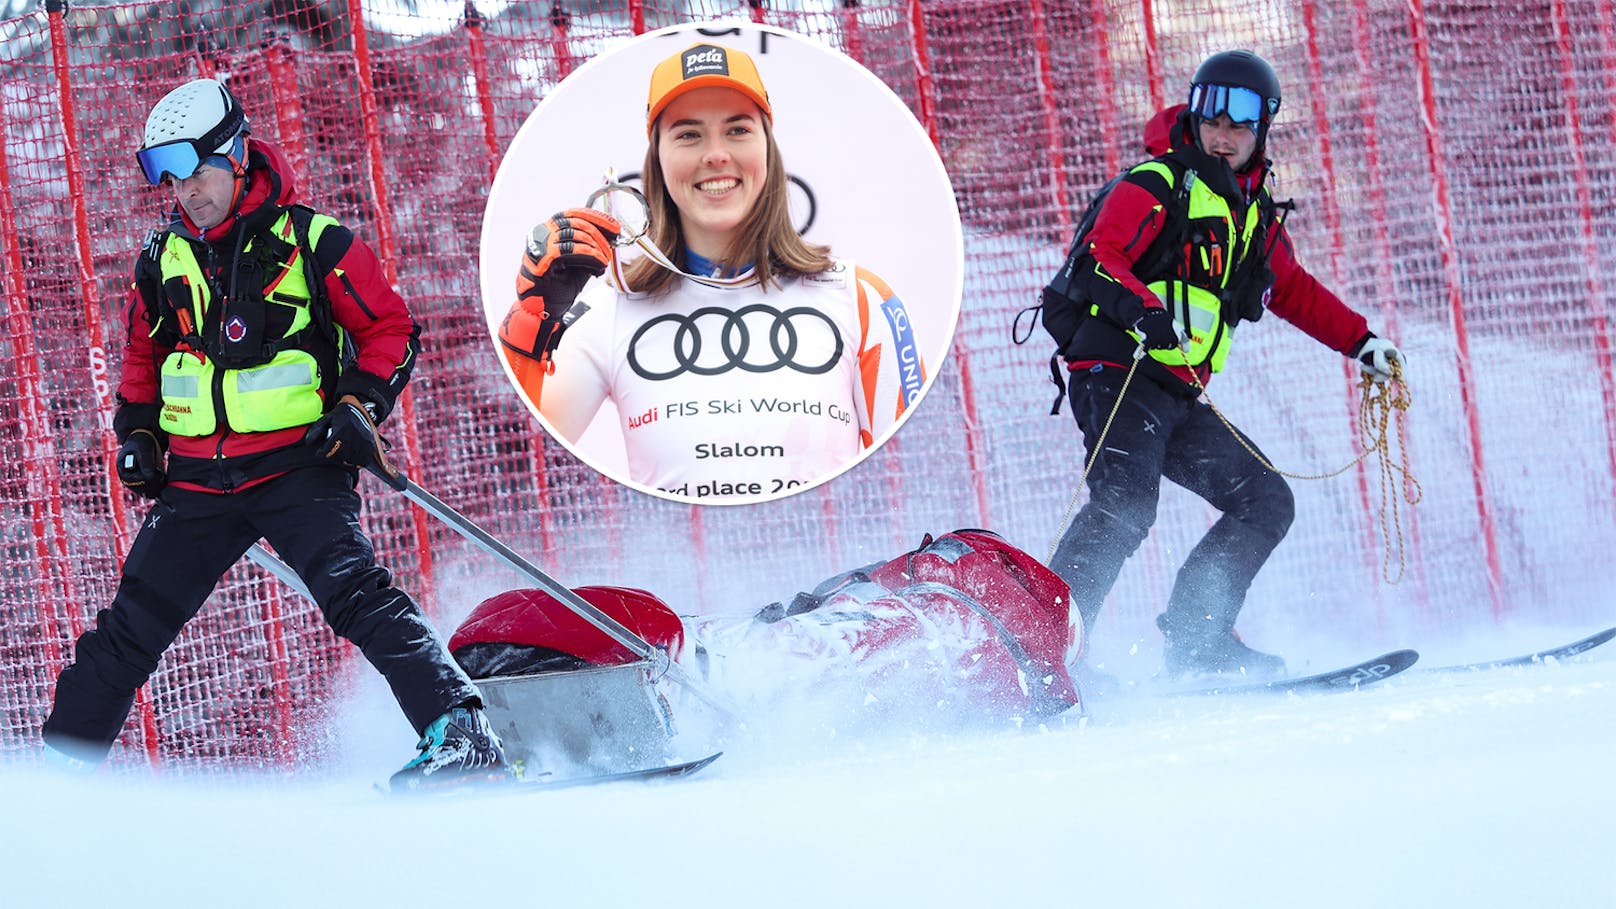 Verletzter Ski-Star: "Wäre nicht dieselbe Person"